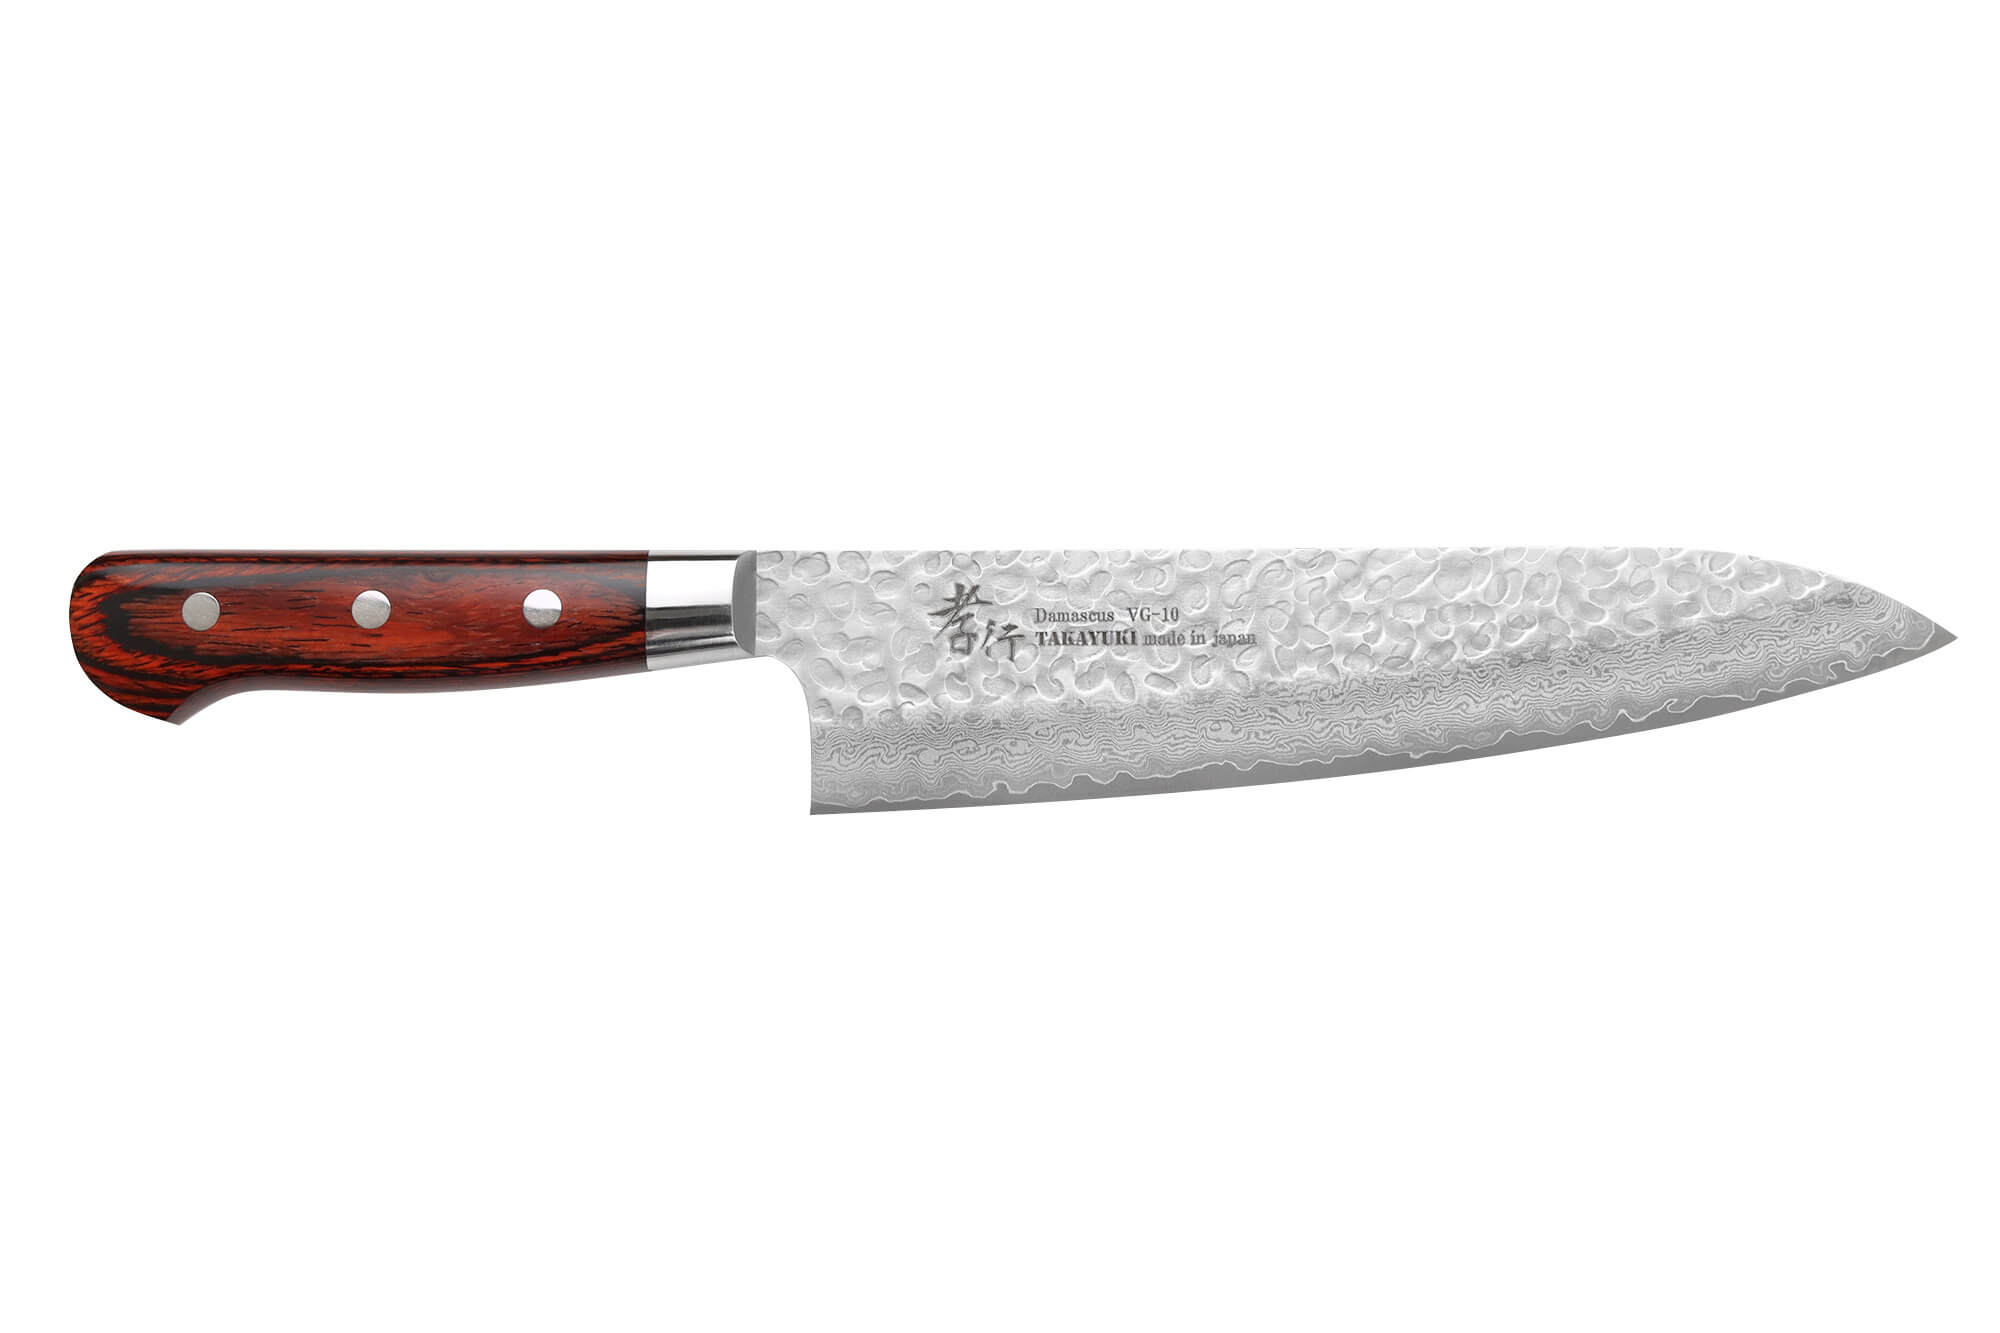 Global knives - G3 - Couteau à découper - 21cm - couteau de cuisine